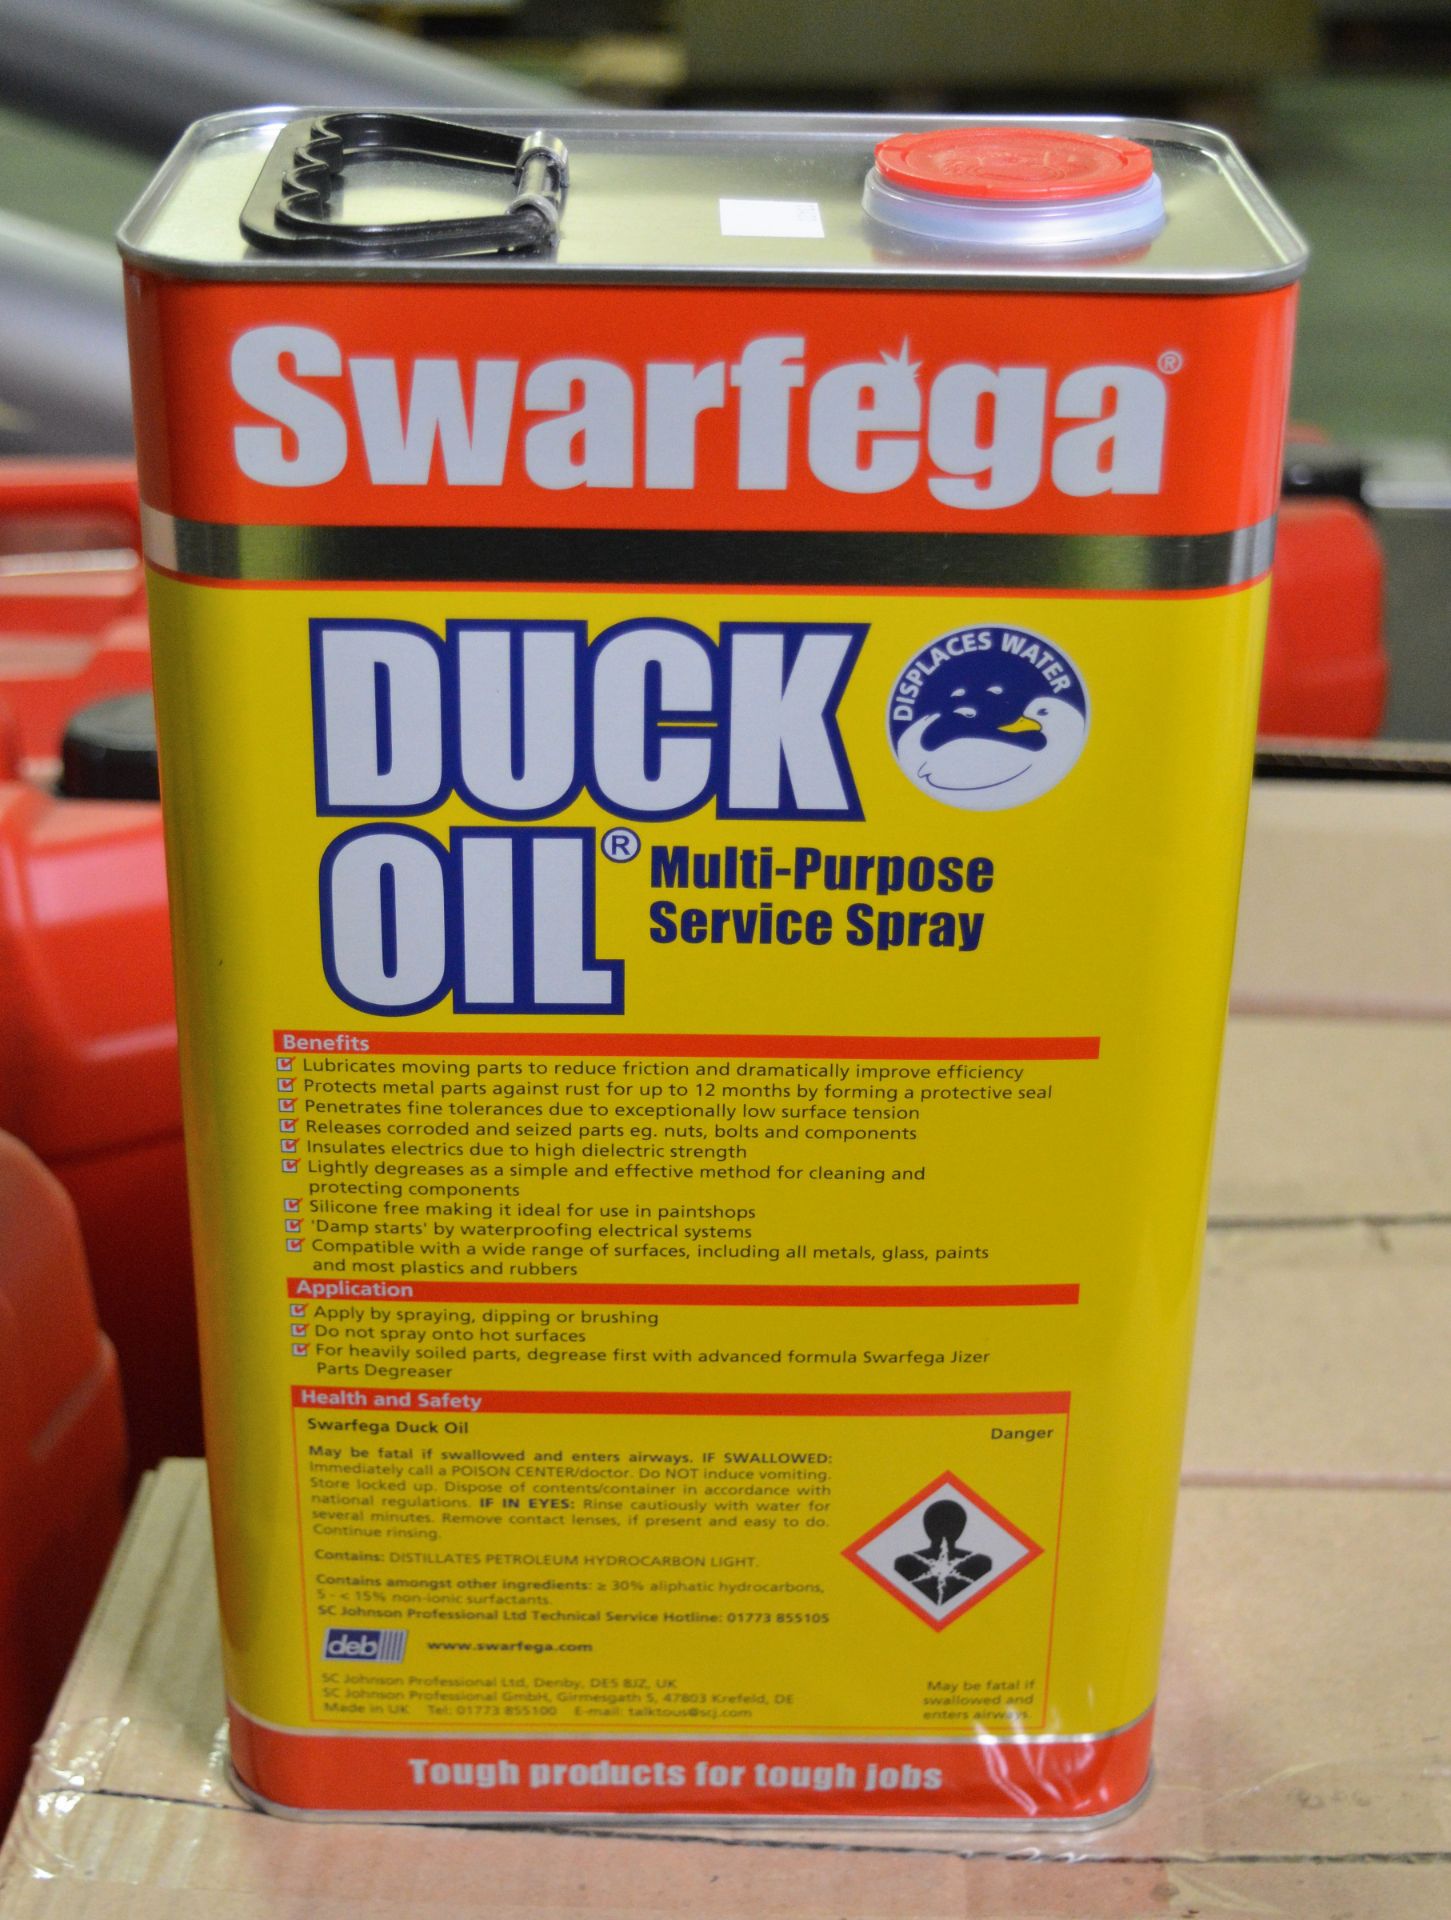 Duck oil multi purpose service spray - 4 per box 3 boxes, Swarfega powerwash & wax 25ltr t - Image 4 of 6